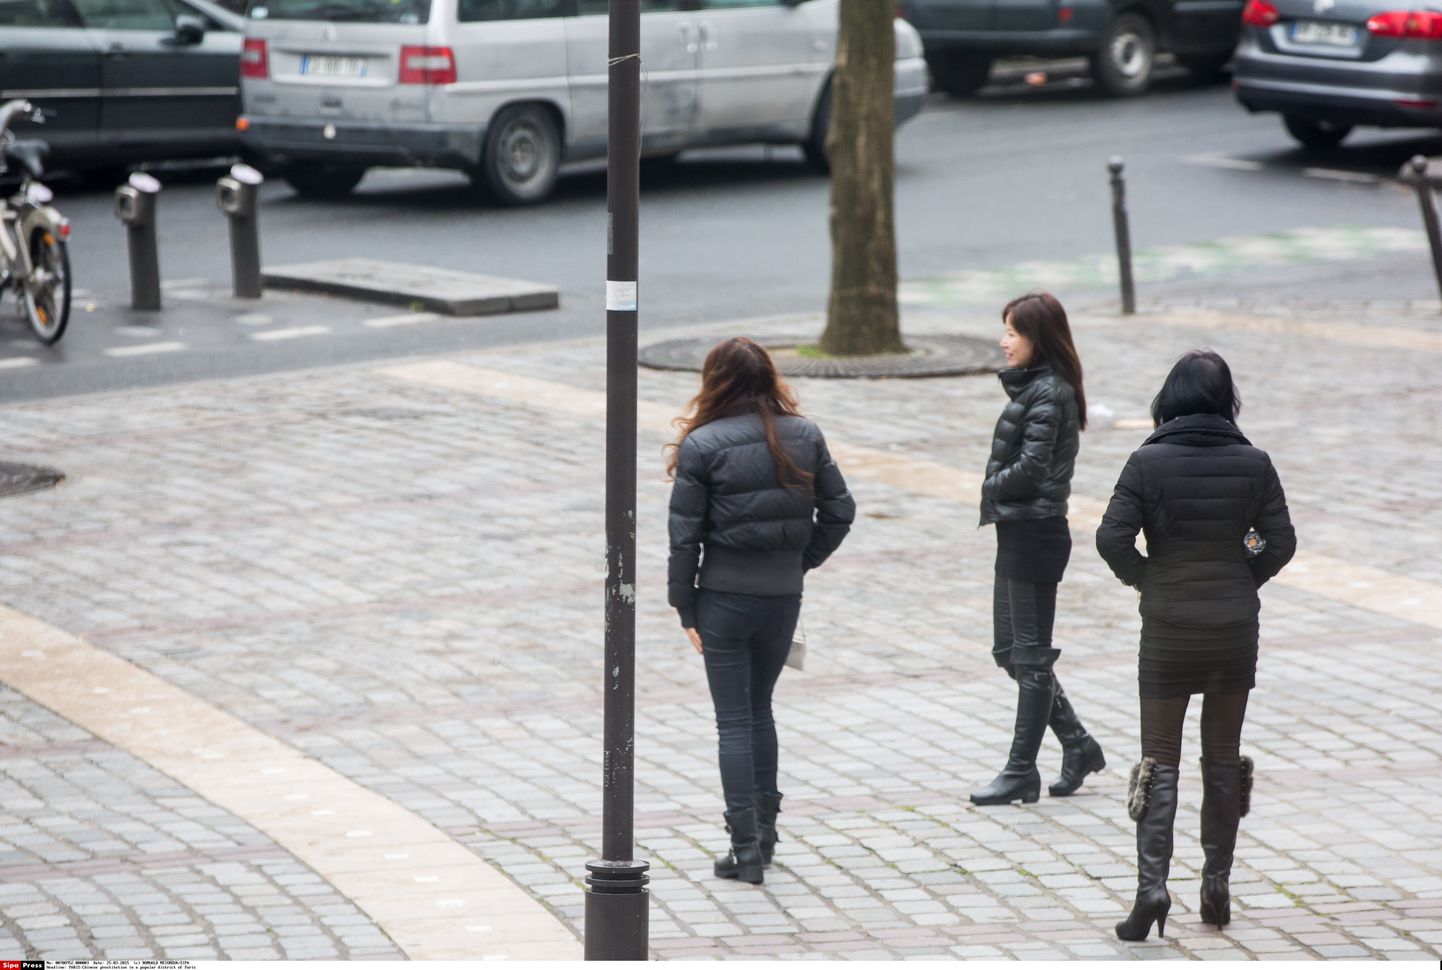 Hiina prostituudid Pariisis kliente ootamas.